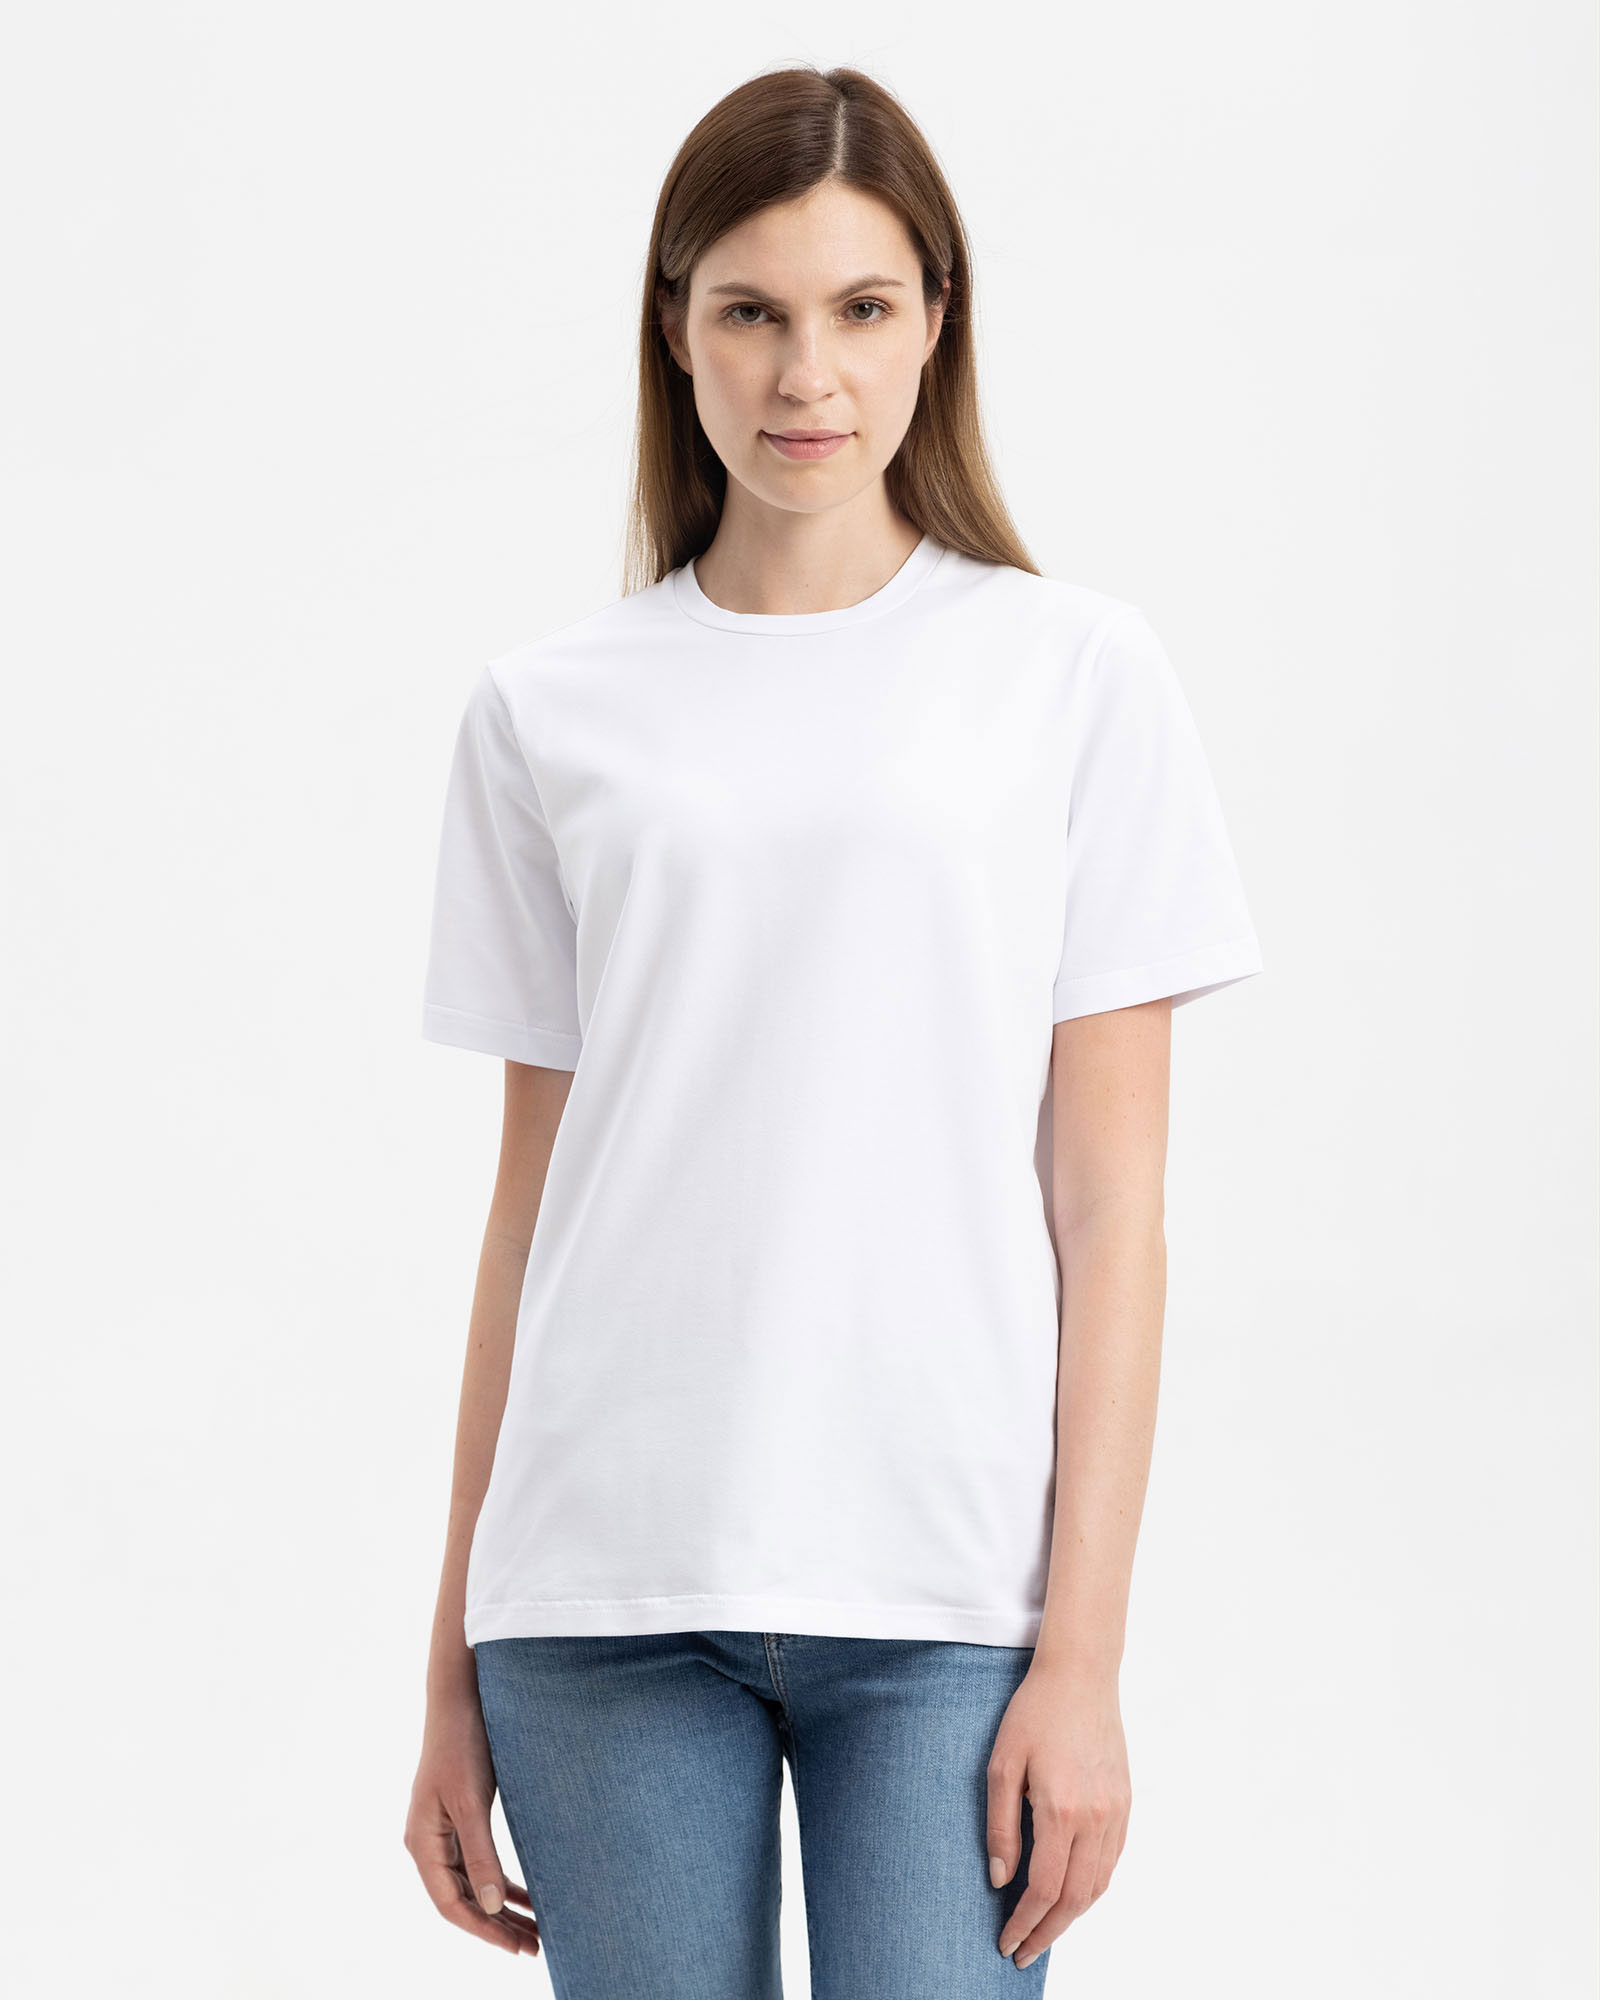 Женская хлопковая футболка classic белая - фото 1